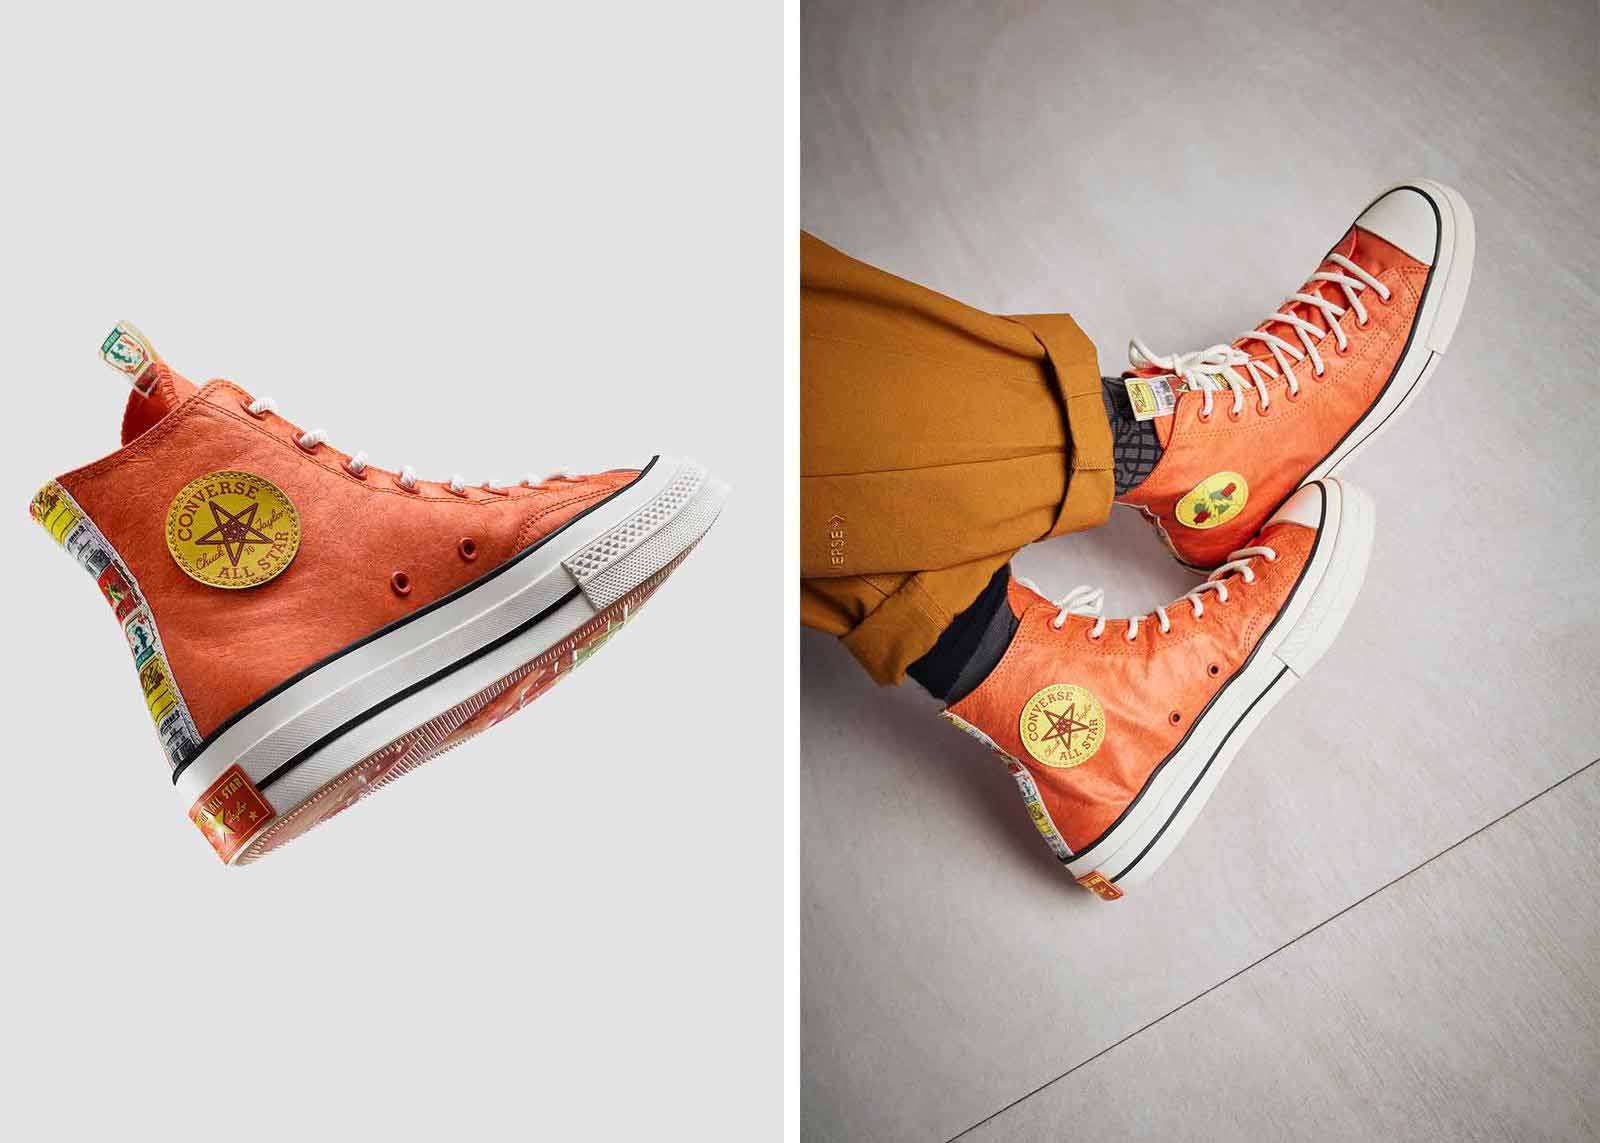 5 mẫu sneakers thiết kế trẻ trung mới phát hành năm 2021 - Ảnh 5Mẫu Crackle với sắc cam vàng nổi bật được hãng chia sẻ là đại diện cho hình ảnh pháo hoa trong những ngày đầu năm mới. Hoạ tiết pháo hoa cũng được đặt dọc theo gót và lưỡi giày.